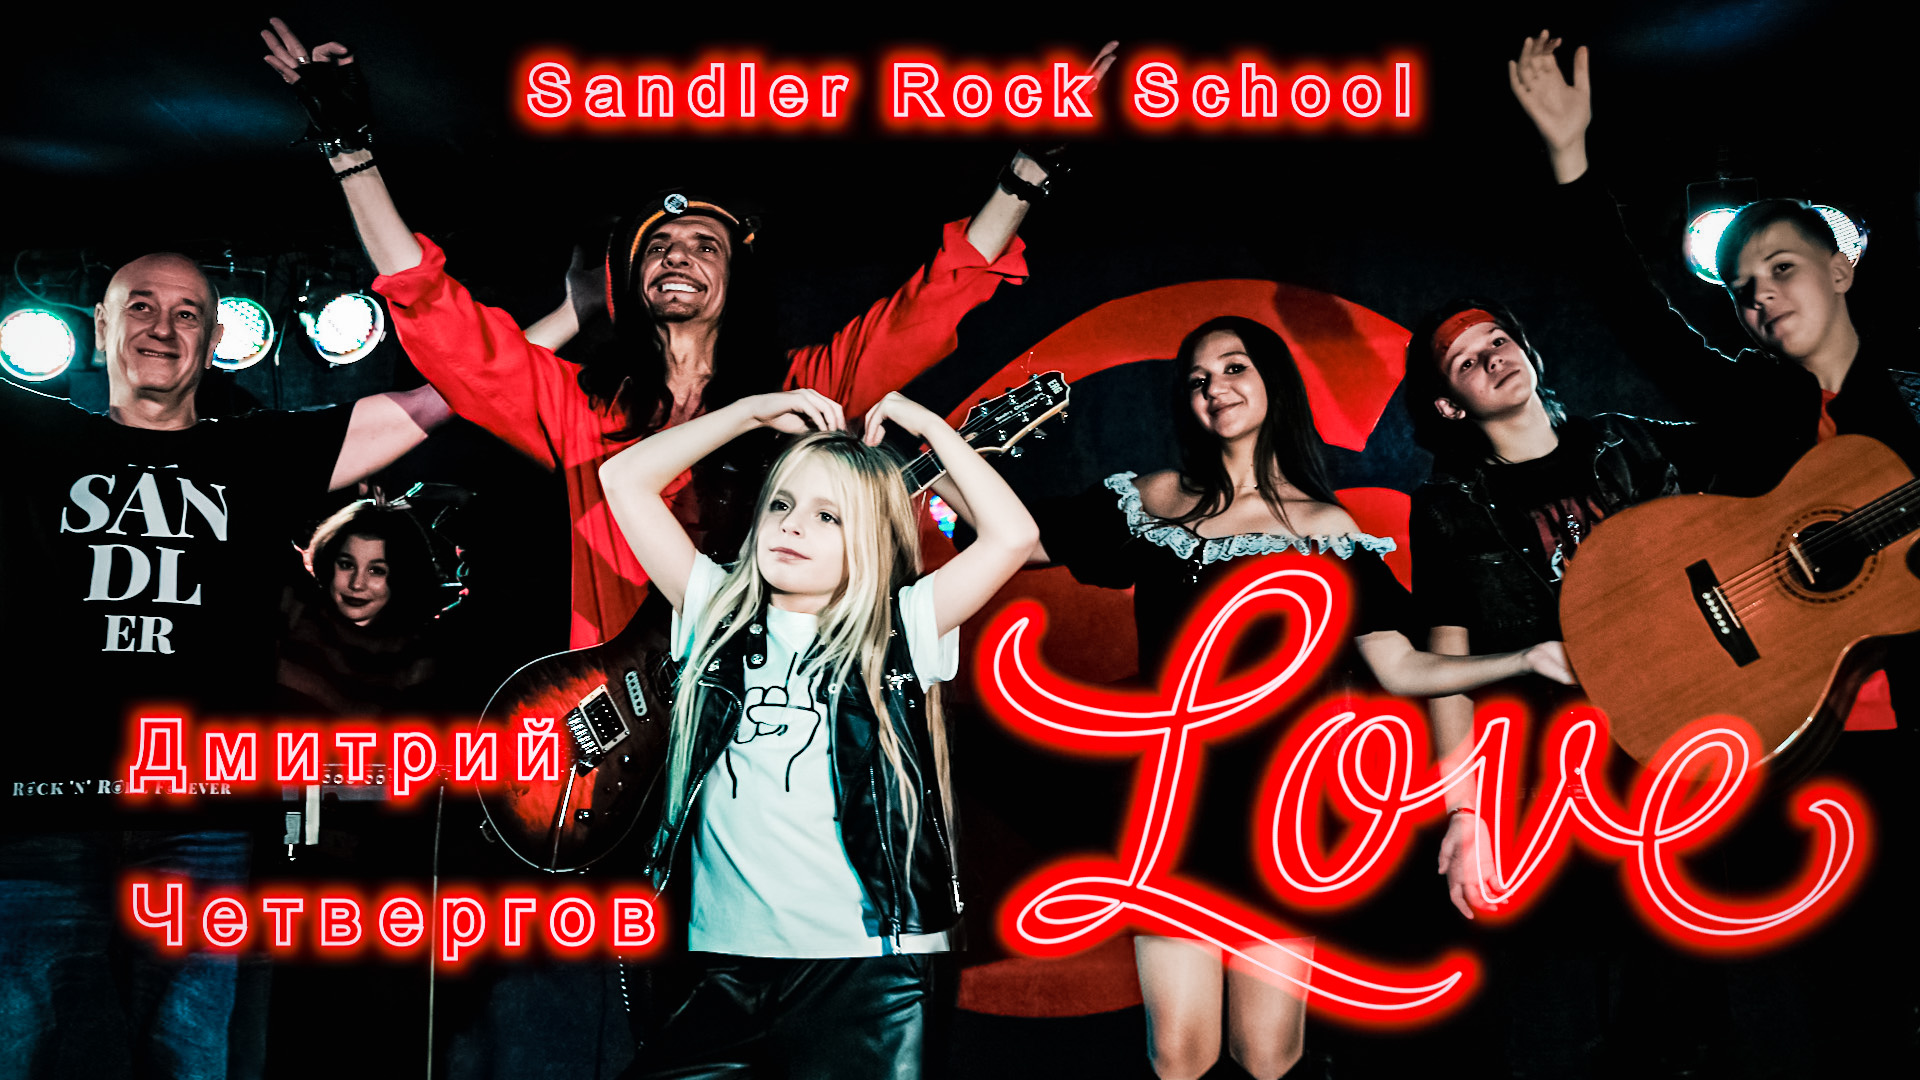 ЛЮБОВЬ (Love) в стиле регги рок. Д. Четвергов и Sandler Rock School. Video production Олег Сидоров